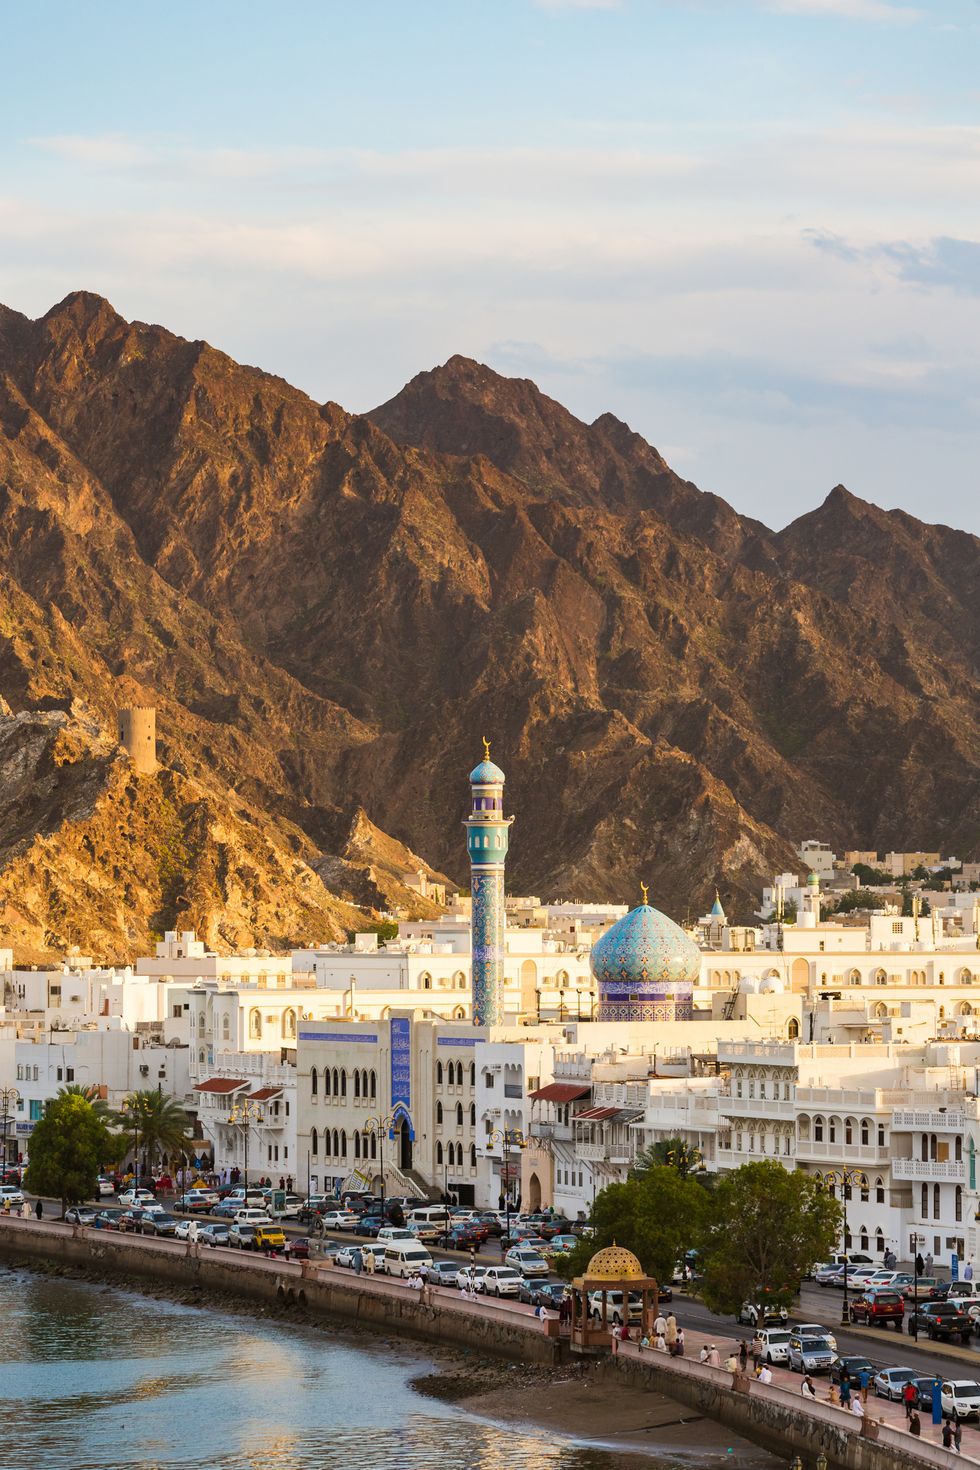 Giáp với Ả Rập Xê Út, Yemen, Các Tiểu vương quốc Ả Rập Thống nhất và Bán đảo Ả Rập, quốc gia ven biển Oman có rất nhiều địa điểm tuyệt đẹp để bạn có thể tham quan và khám phá. Về các thành phố, hãy bắt đầu từ thủ đô Muscat. Chỉ cần một cái nhìn vào đường chân trời tuyệt đẹp sẽ giúp bạn có cái nhìn thoáng qua về lịch sử hấp dẫn và địa lý độc đáo, vì nó được đánh dấu bởi các pháo đài của Bồ Đào Nha, một bến cảng nhộn nhịp và bối cảnh là những ngọn núi hùng vĩ.